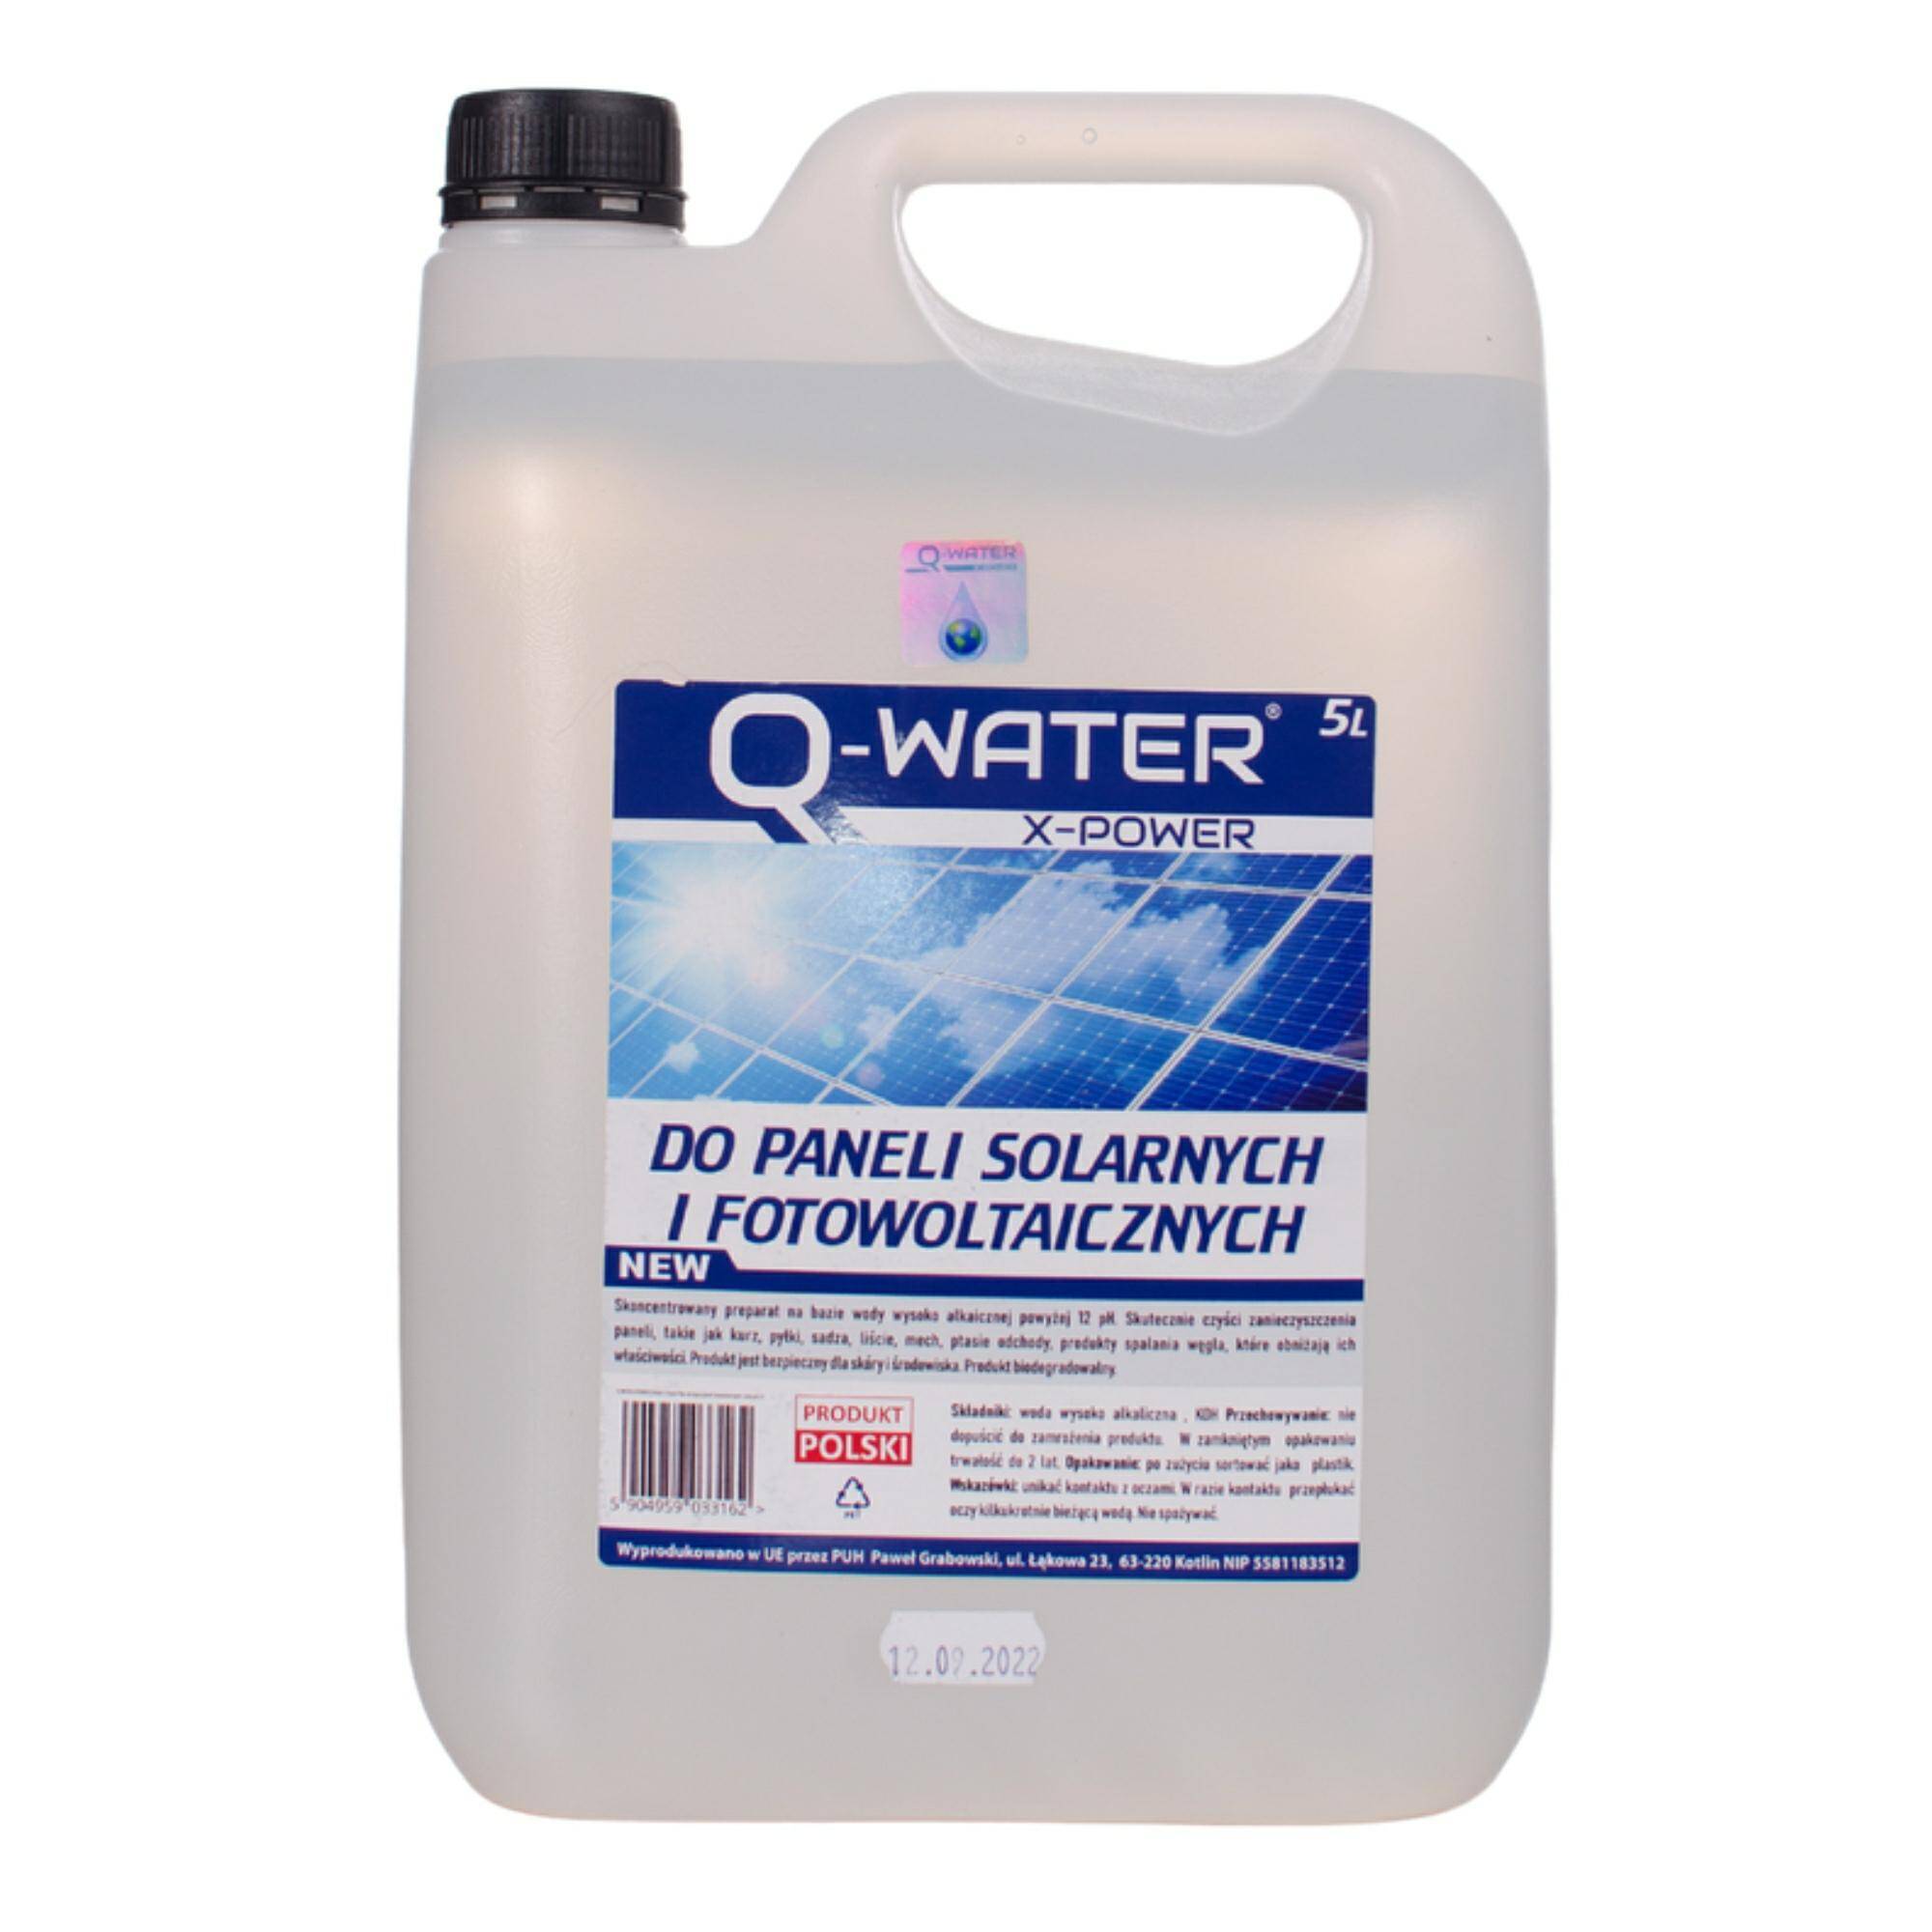 Q-Water 5L płyn do czyszczenia paneli solarnych i fotowoltaicznych.